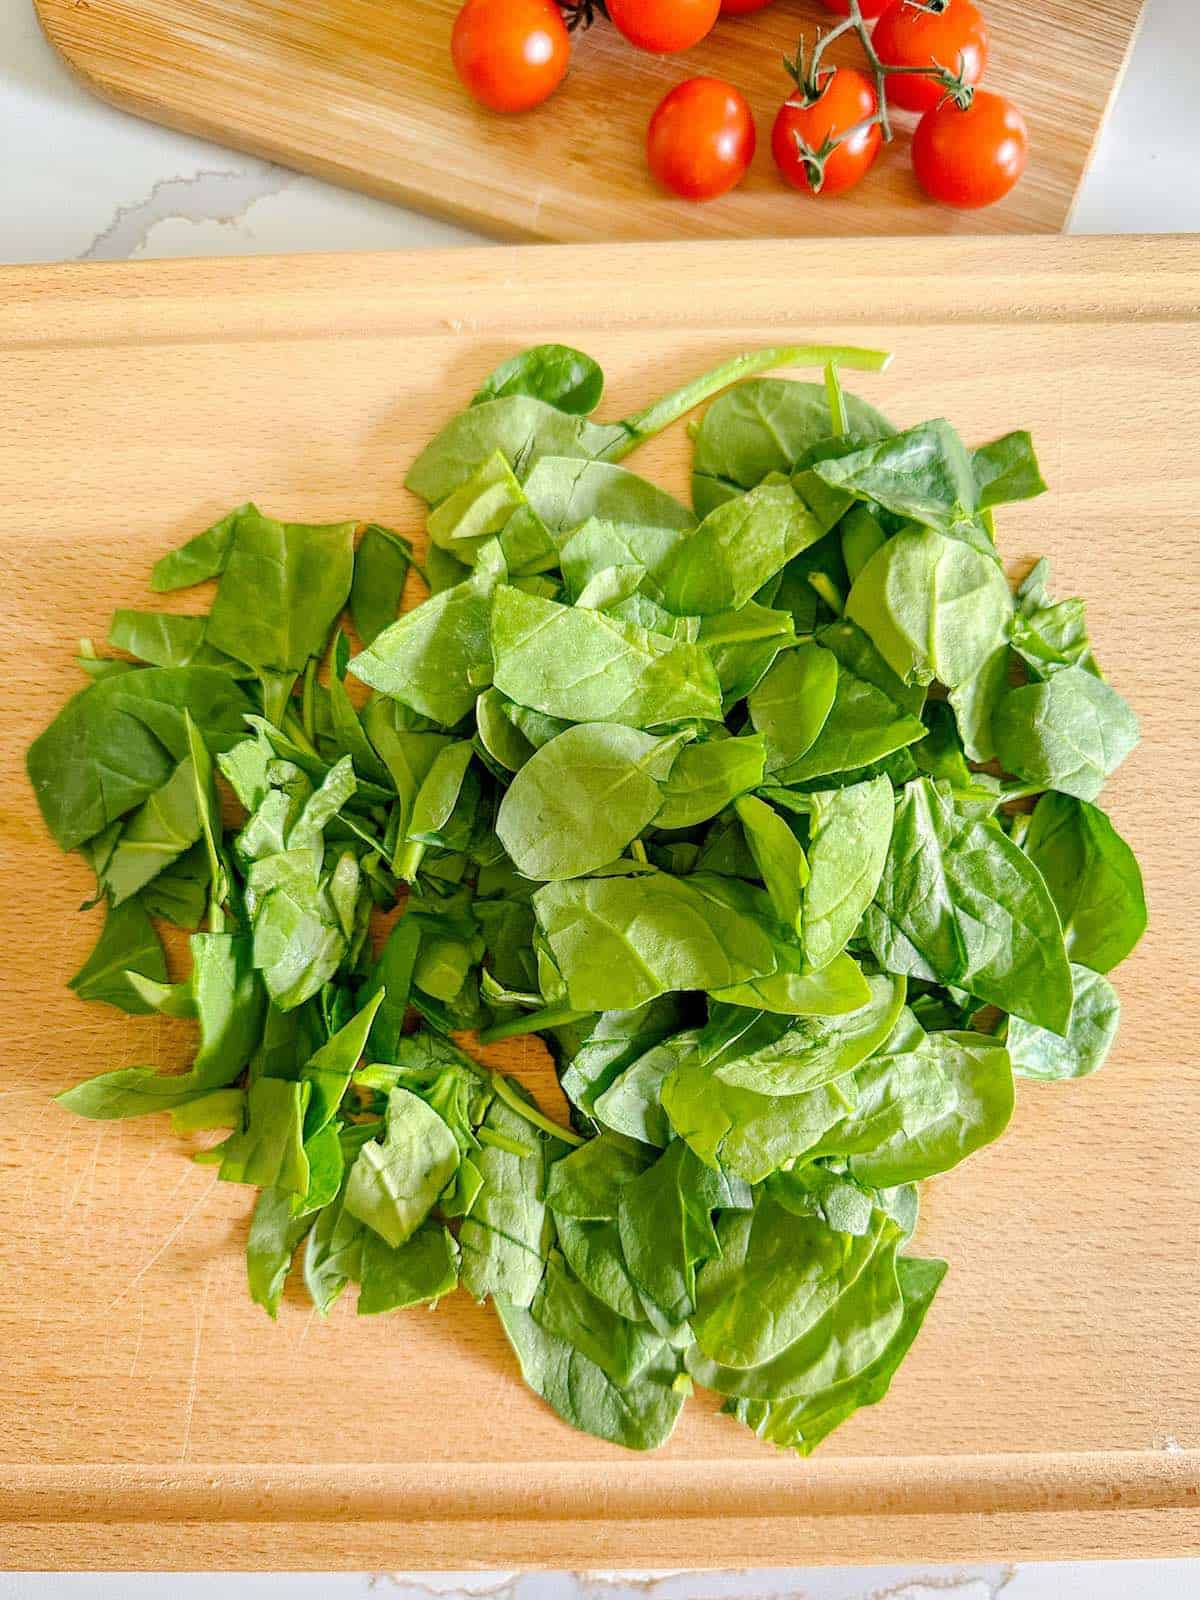 Chopped fresh spinach on a cutting board.